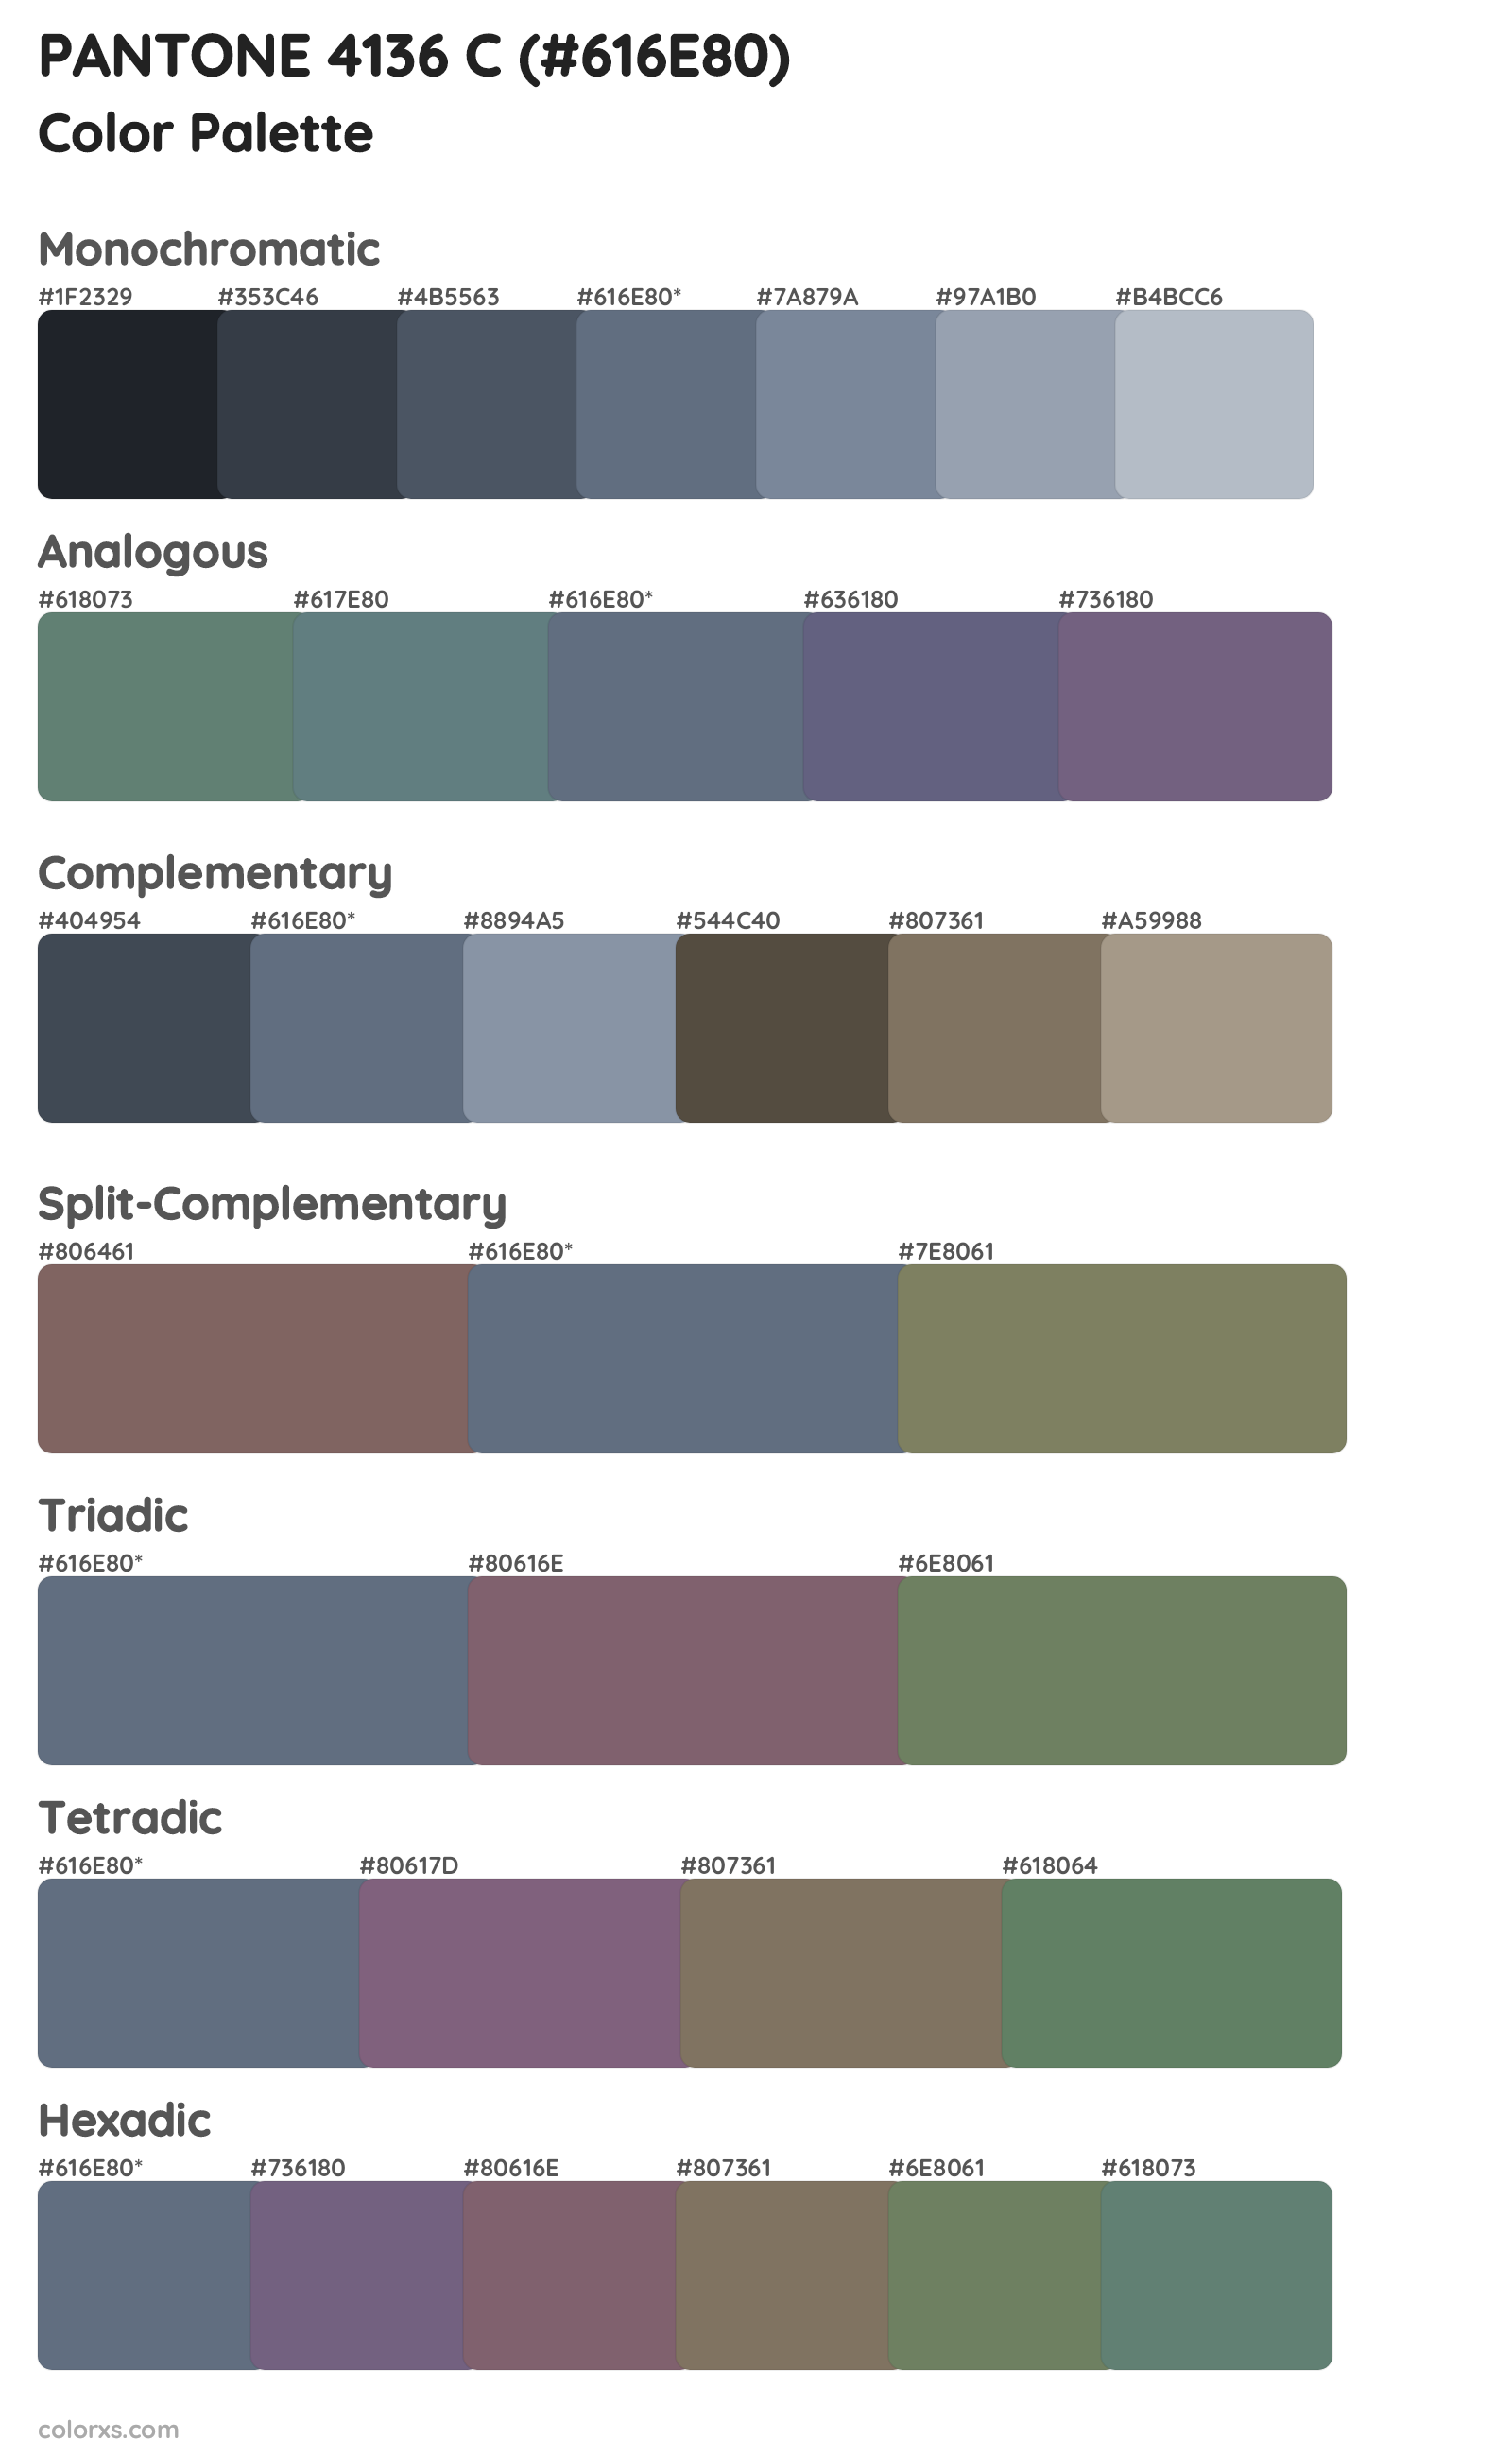 PANTONE 4136 C Color Scheme Palettes